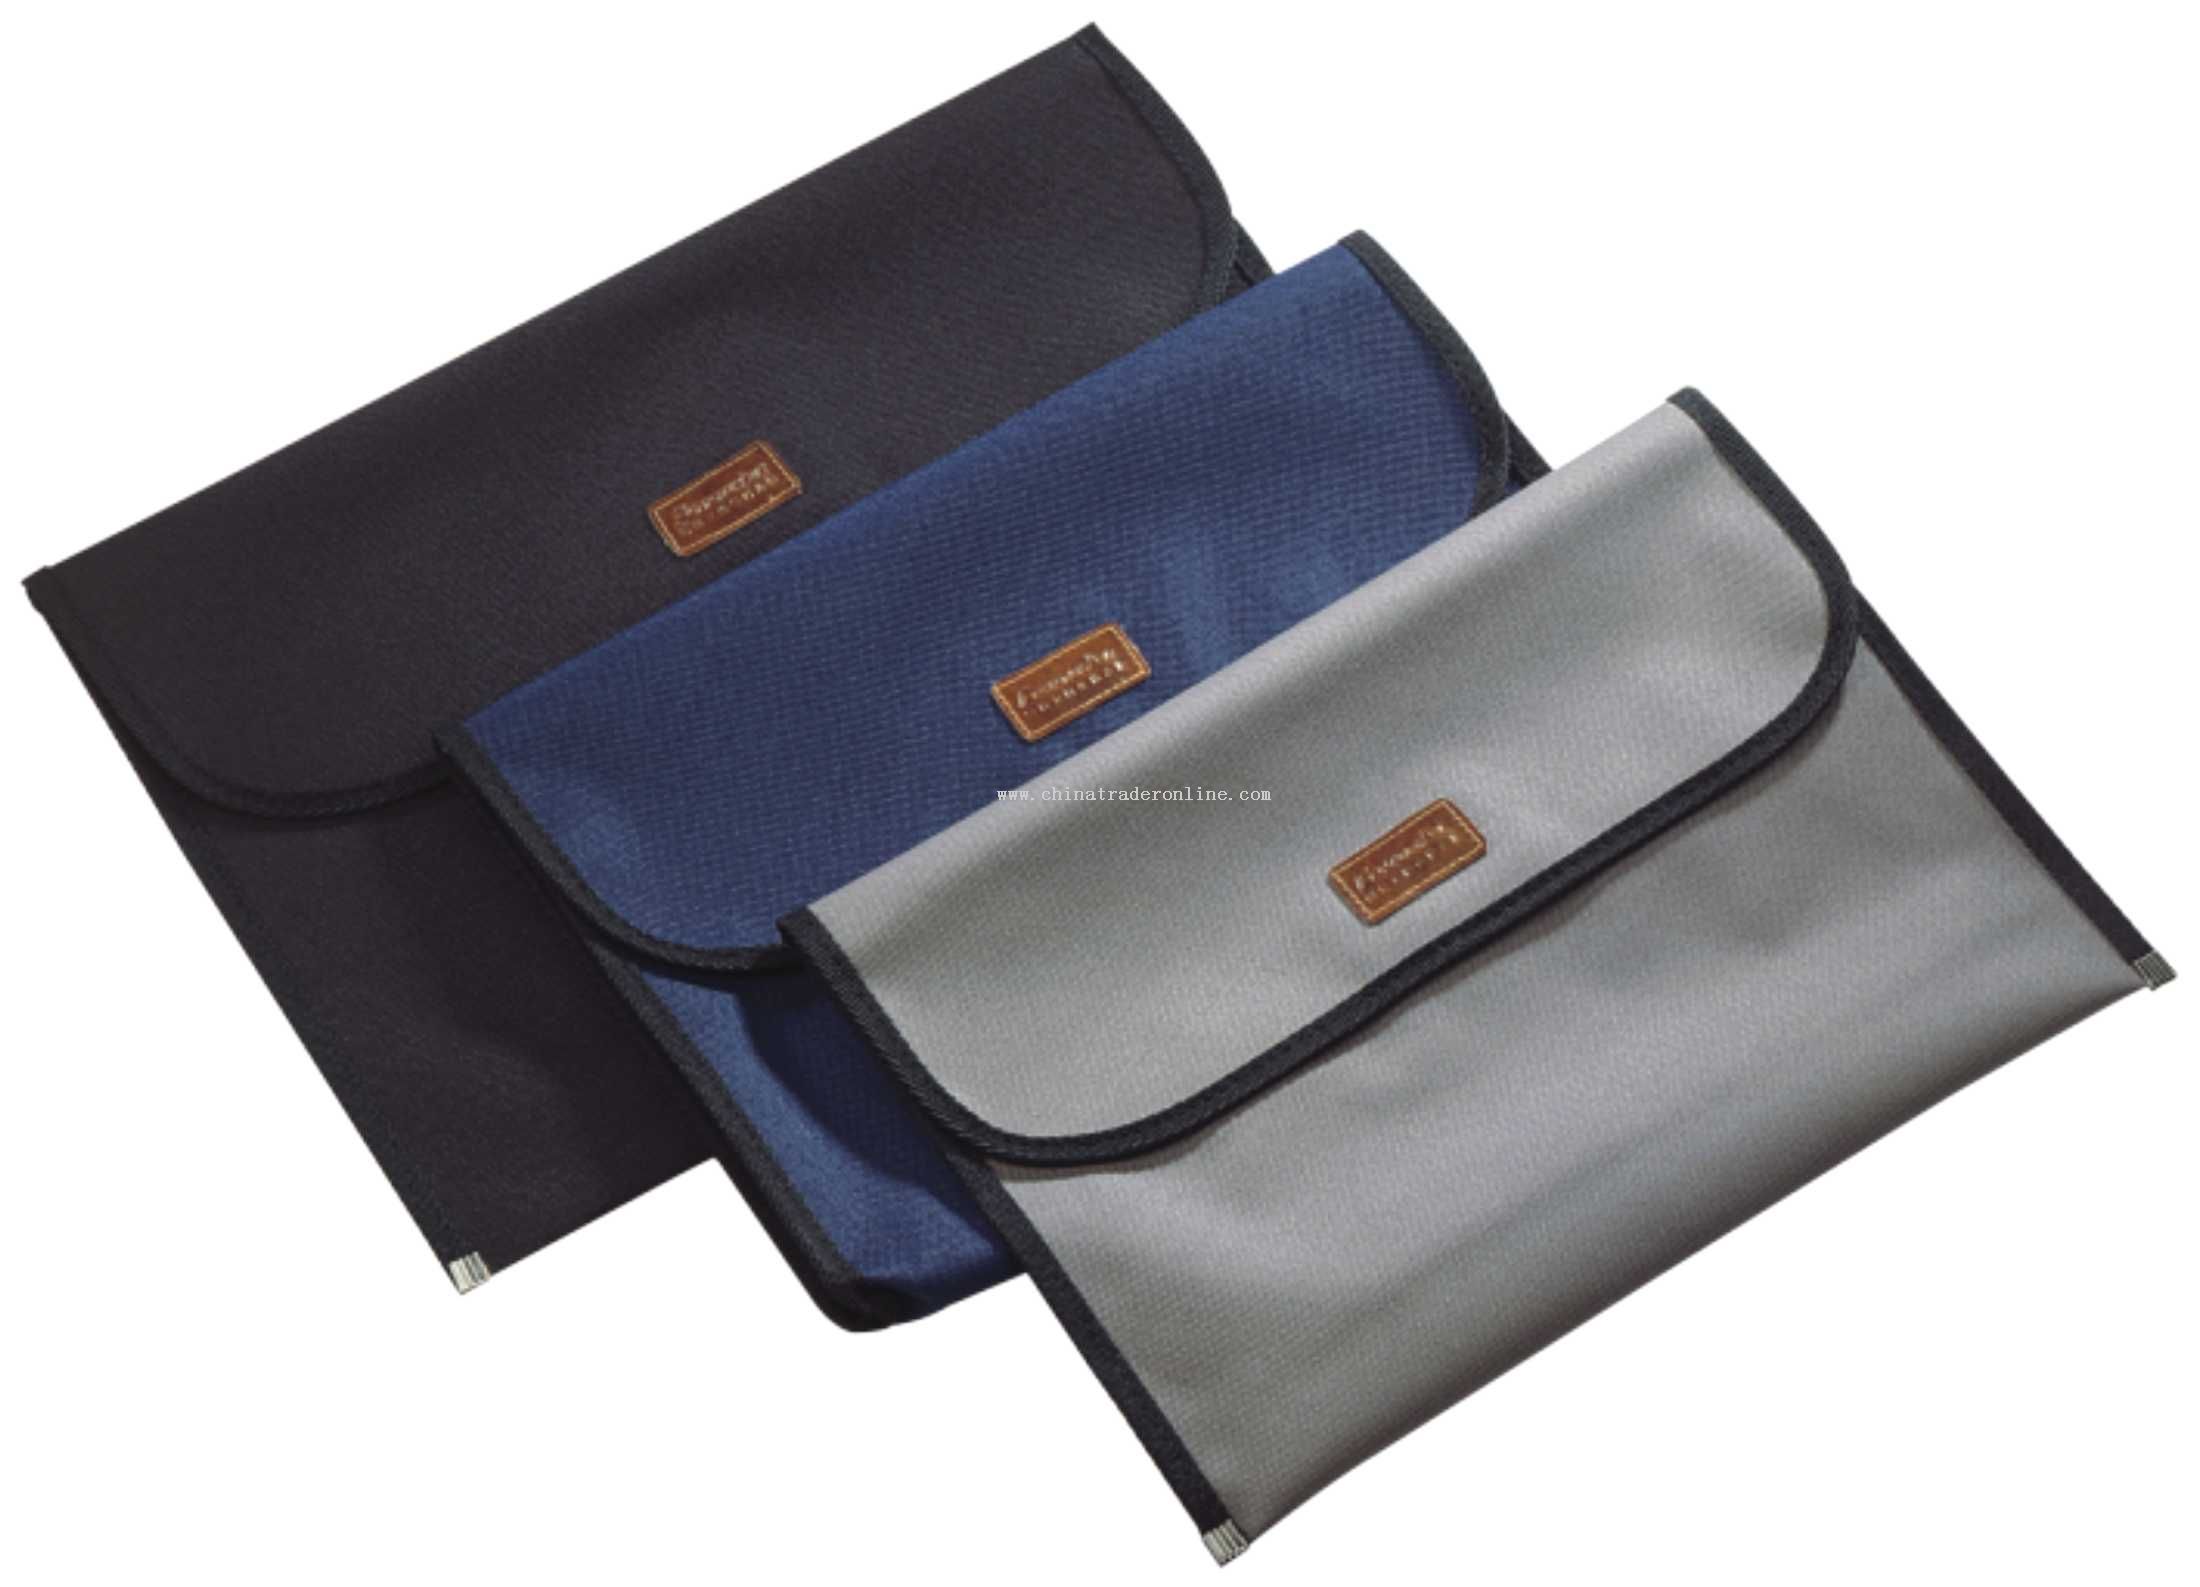 Fabric zipper bag (envelop design)